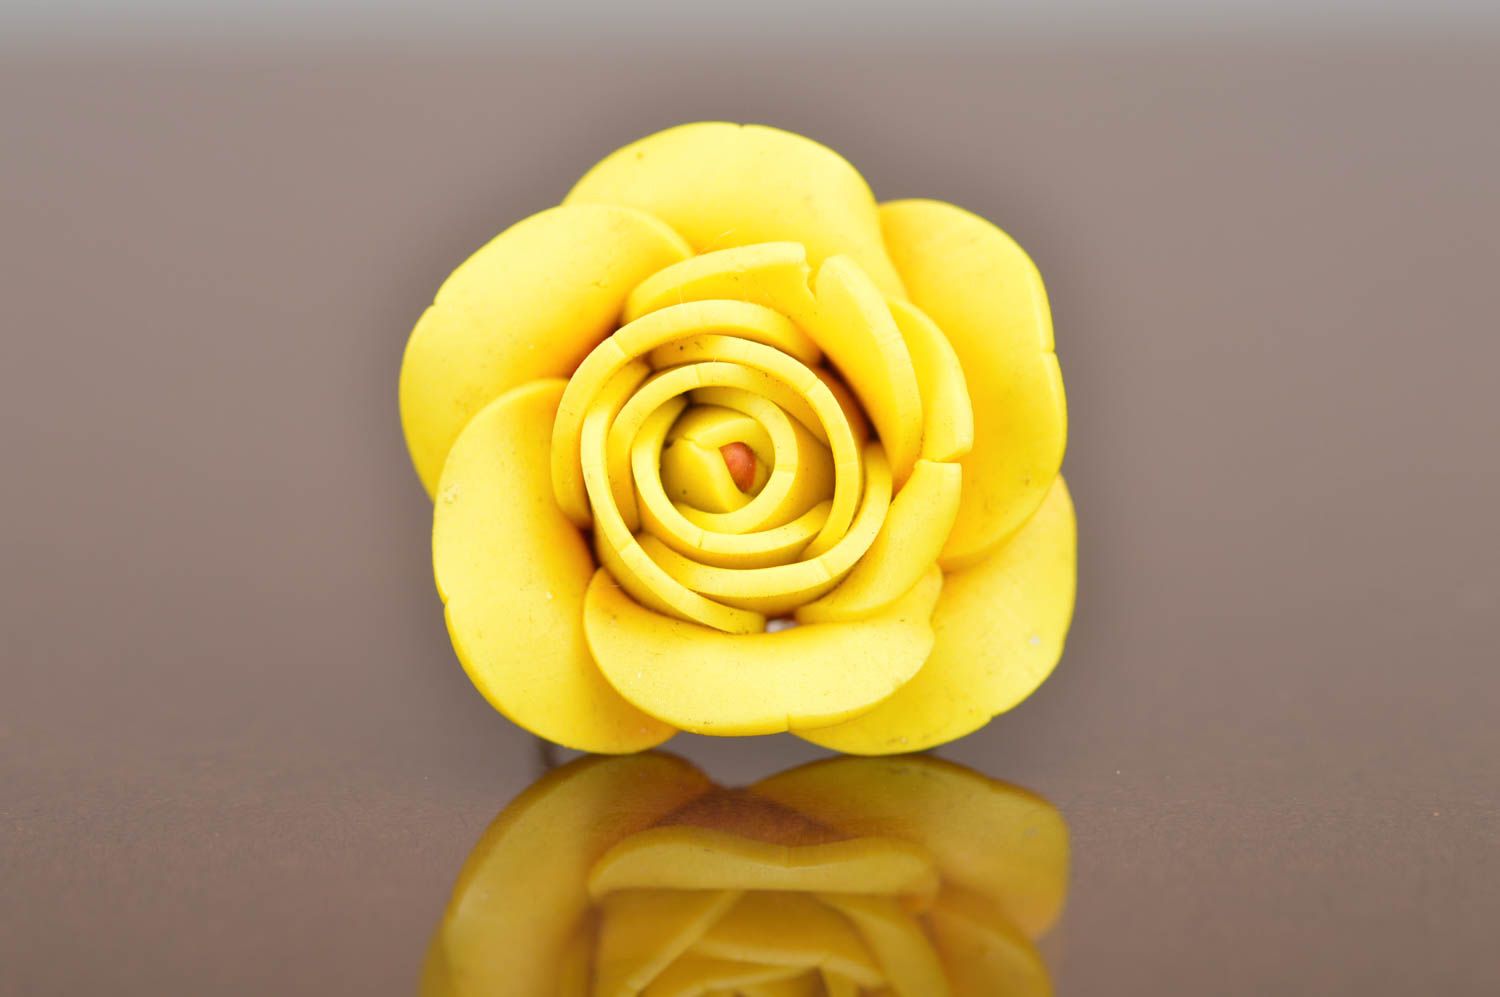 Кольцо из полимерной глины в виде объемной желтой розы ручной работы авторское фото 5